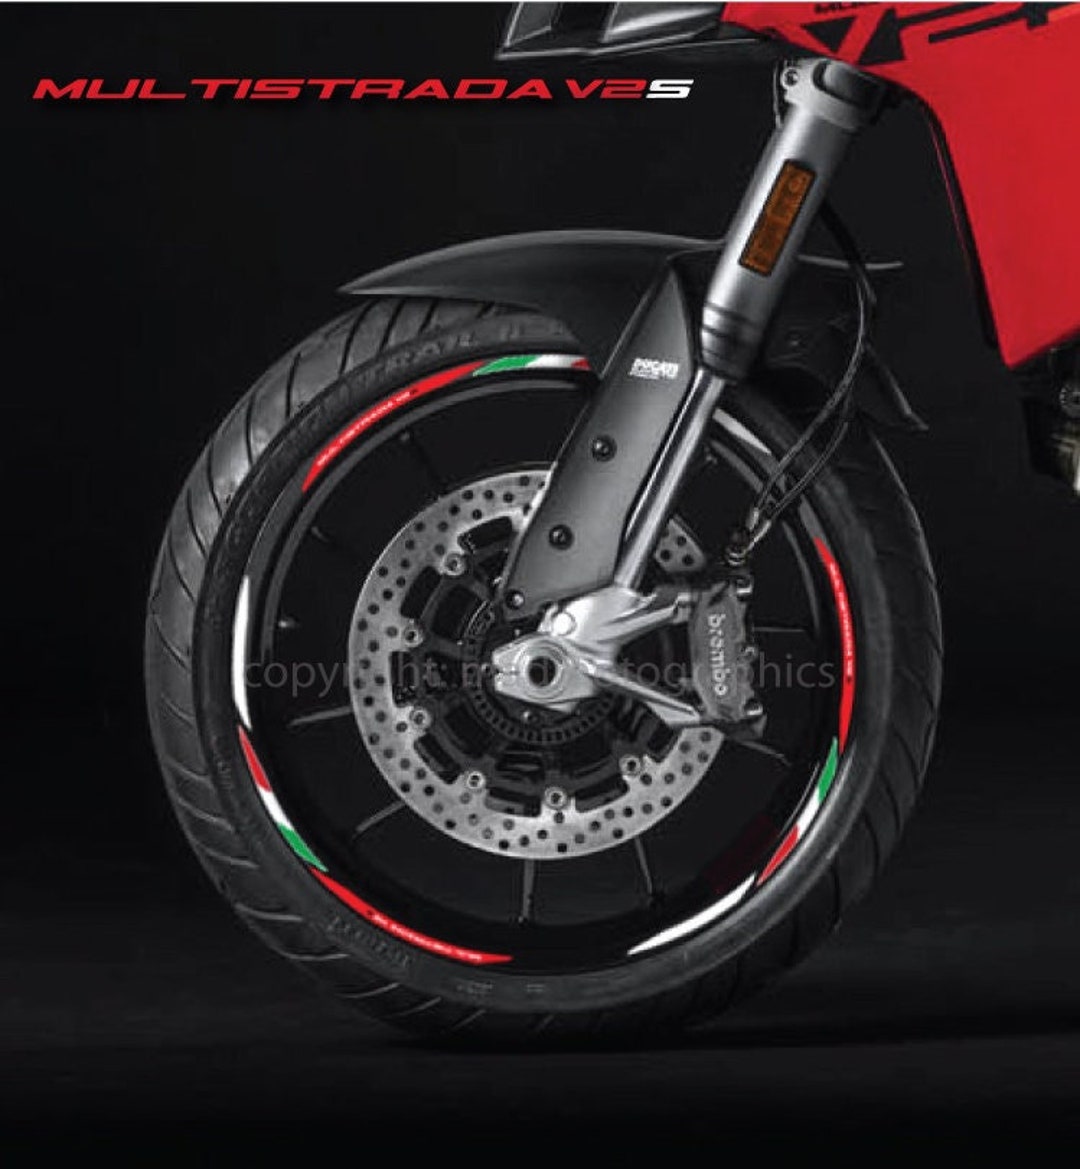 Motorrad Felgenaufkleber Aufkleber Felgenband Streifen Rennmotorrad für  Ducati Multistrada V2S V2 Rot Weiß Laminiert - .de